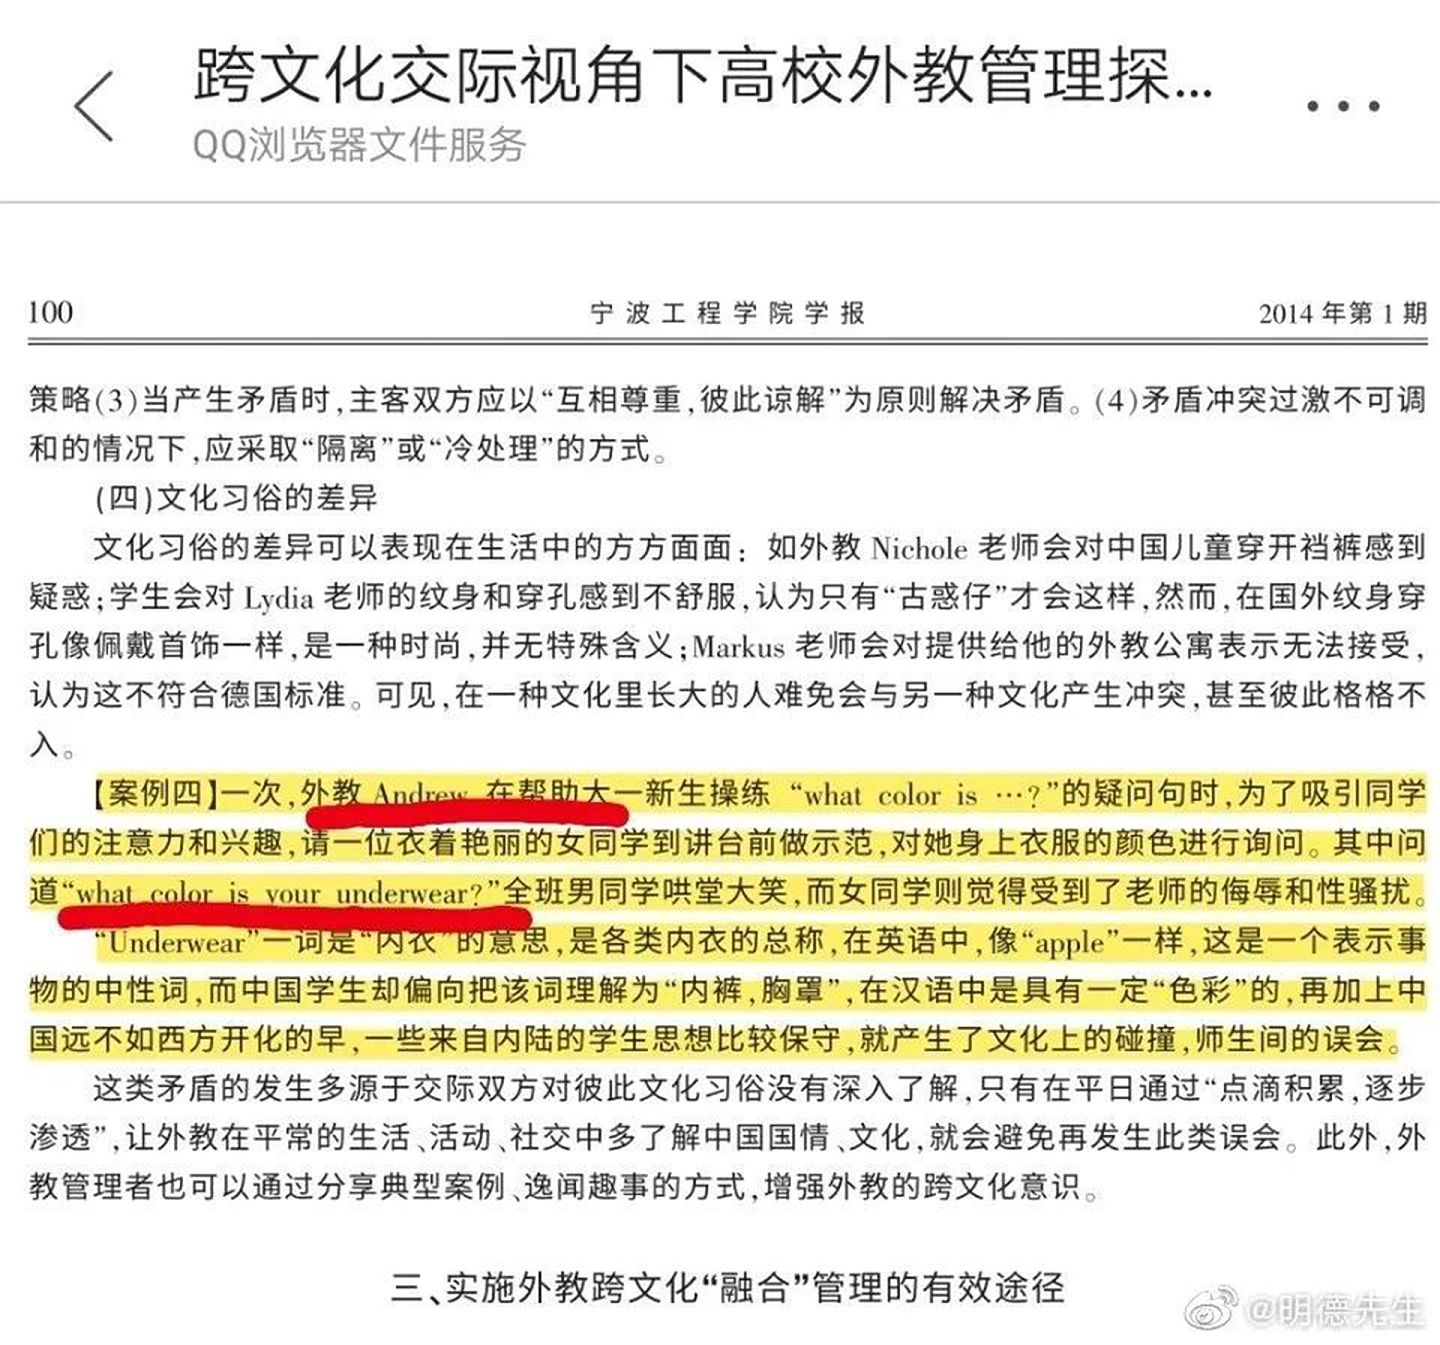 称中国女学生拒绝被问内衣颜色是思想保守，宁波工程学院早期论文曝光引发热议。（微博@被割大动脉的伪先知）